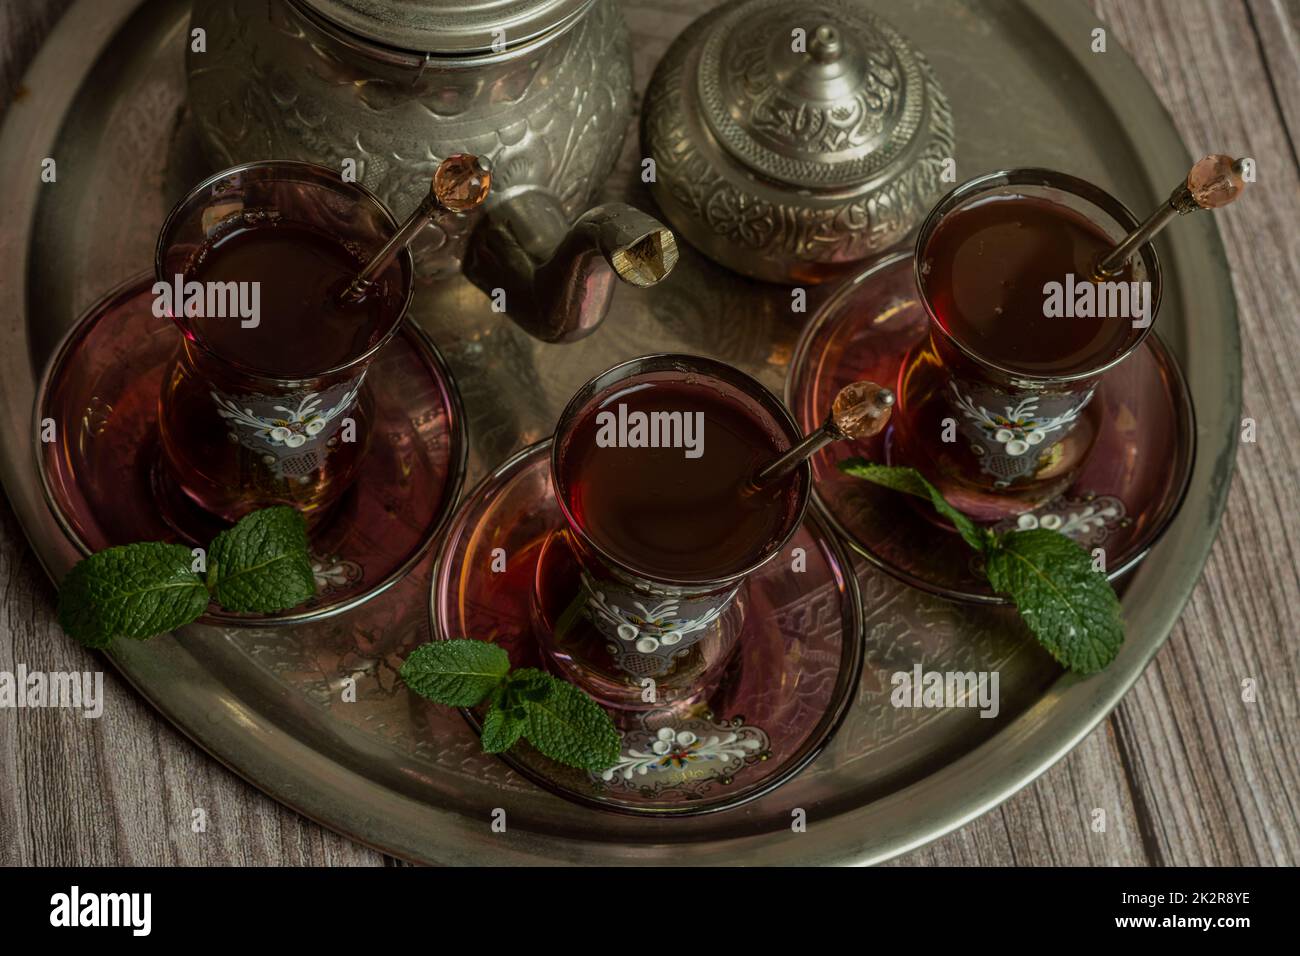 Plateau avec verres et verseuse de thé mauresque authentique Banque D'Images